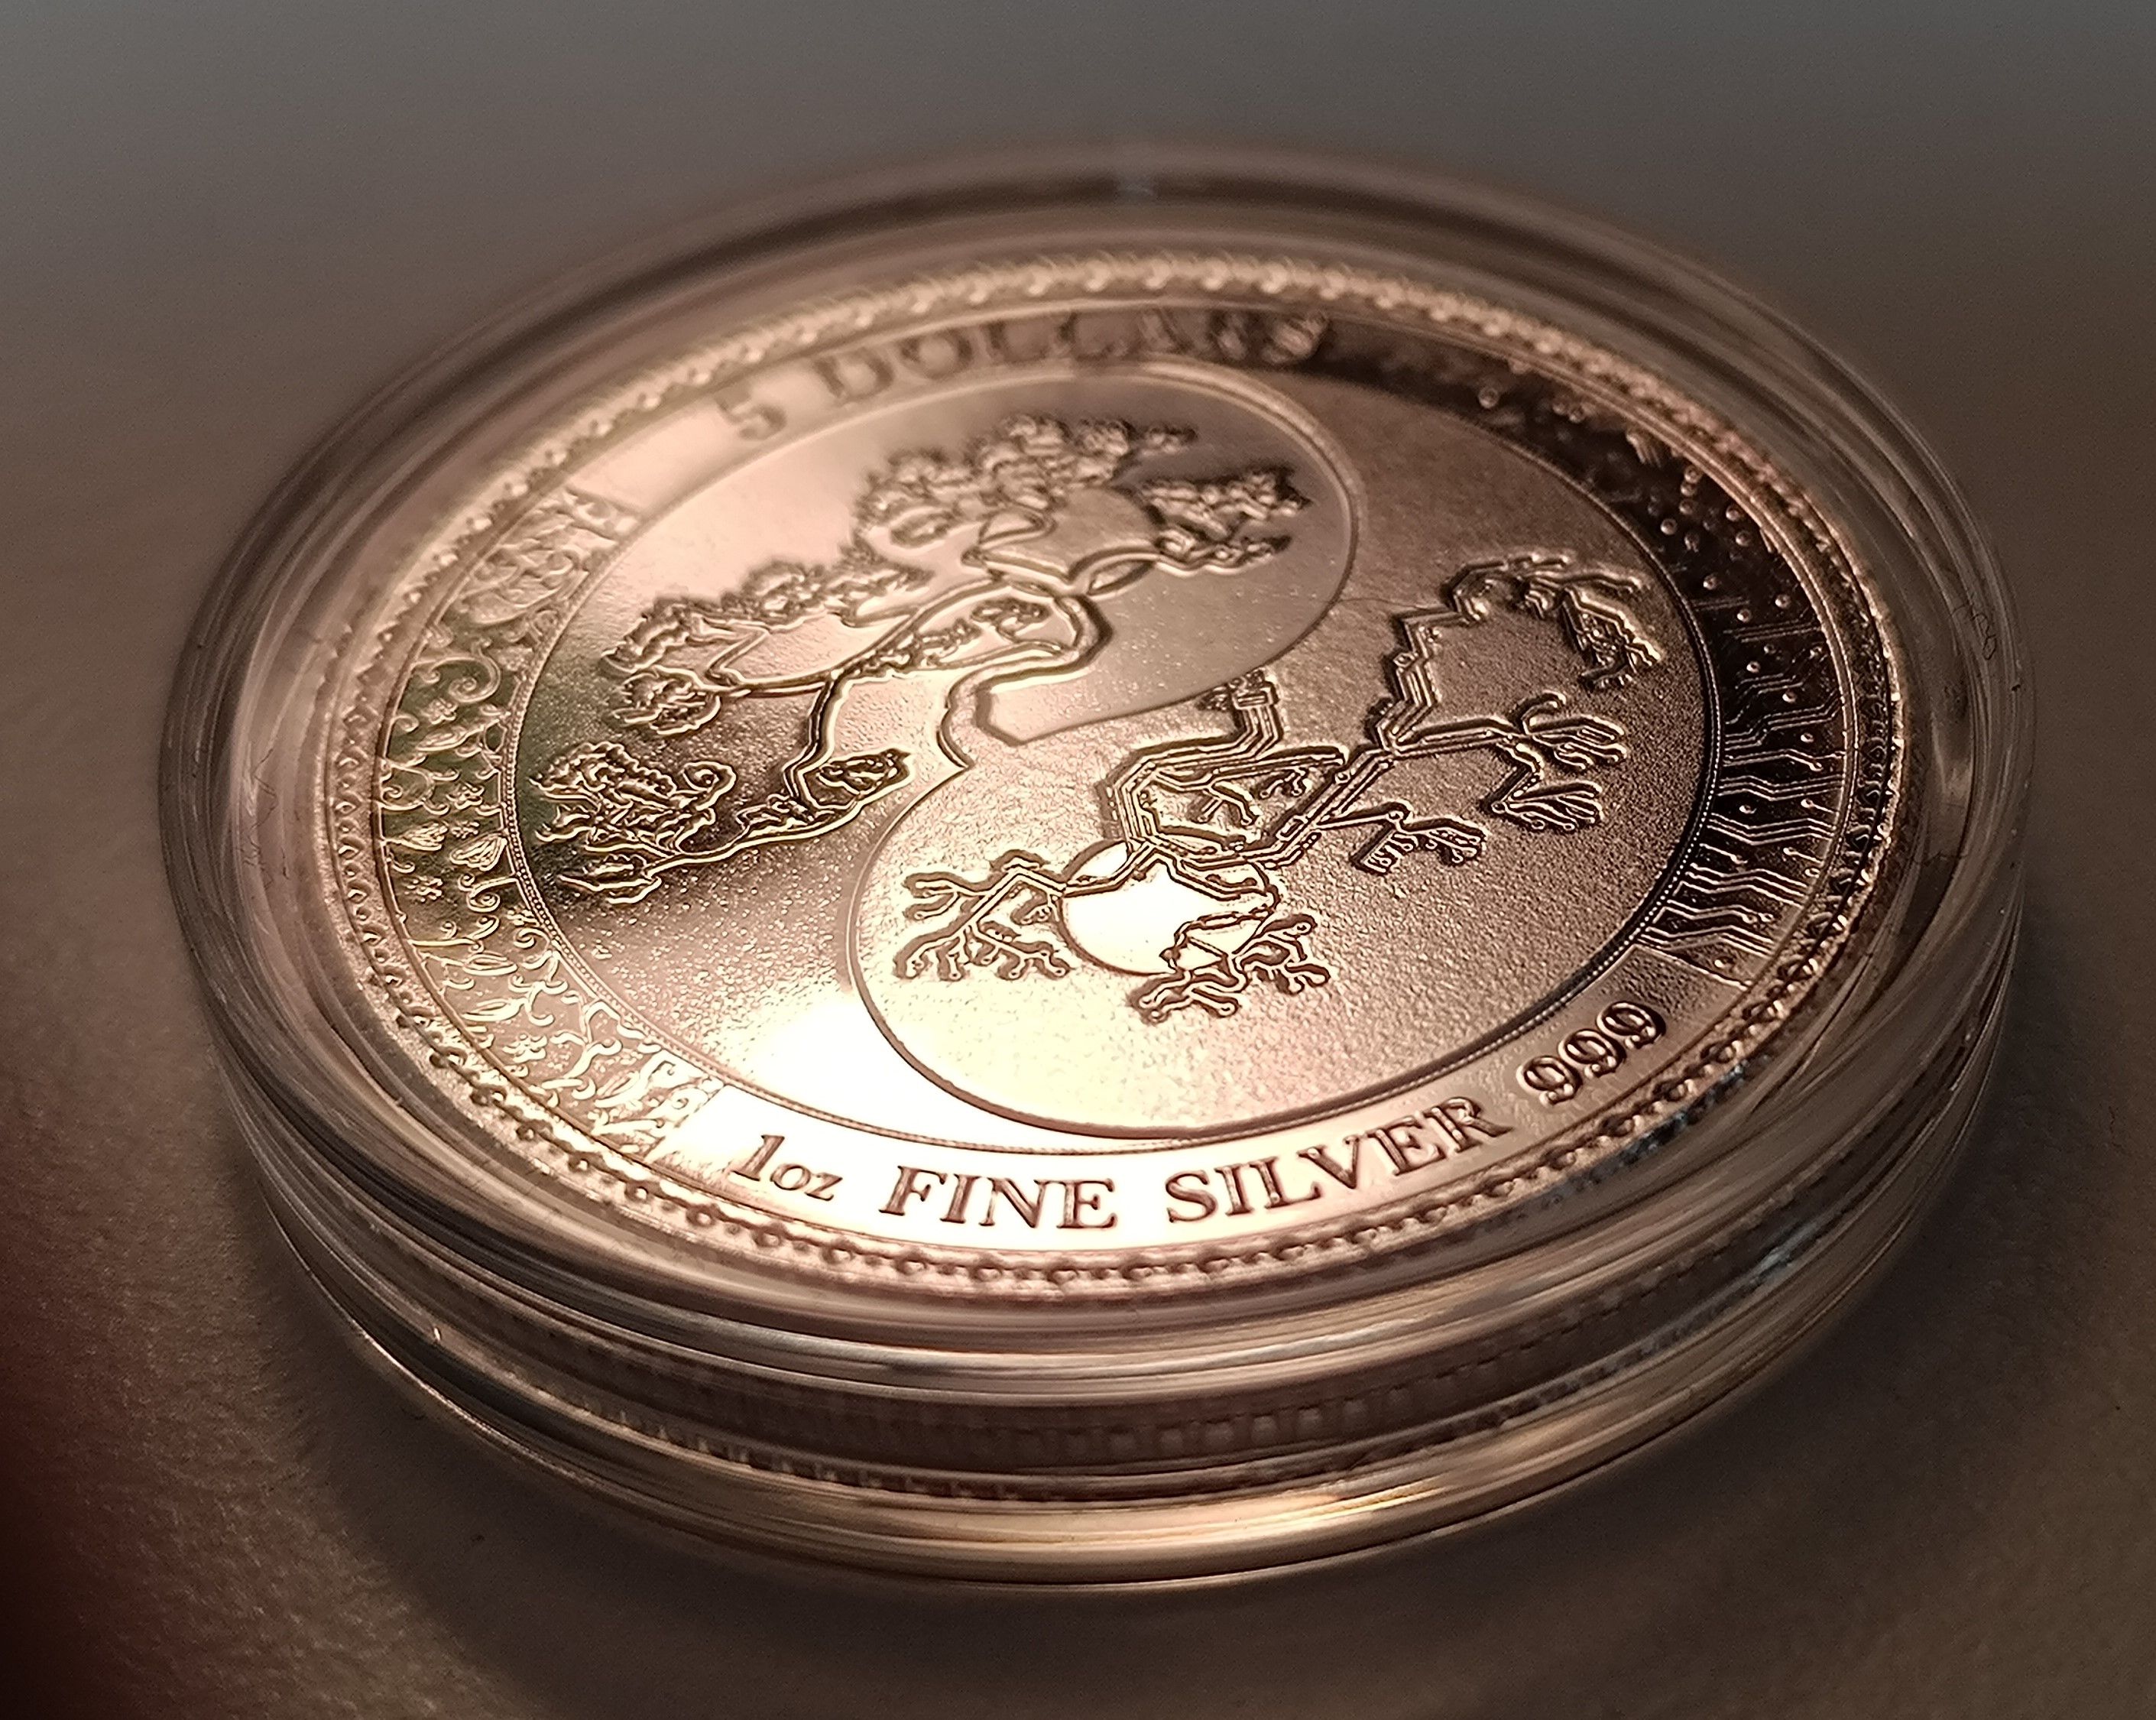 equilibrium 1 oz silver round - 2018 - Pressburg mint (8).jpg